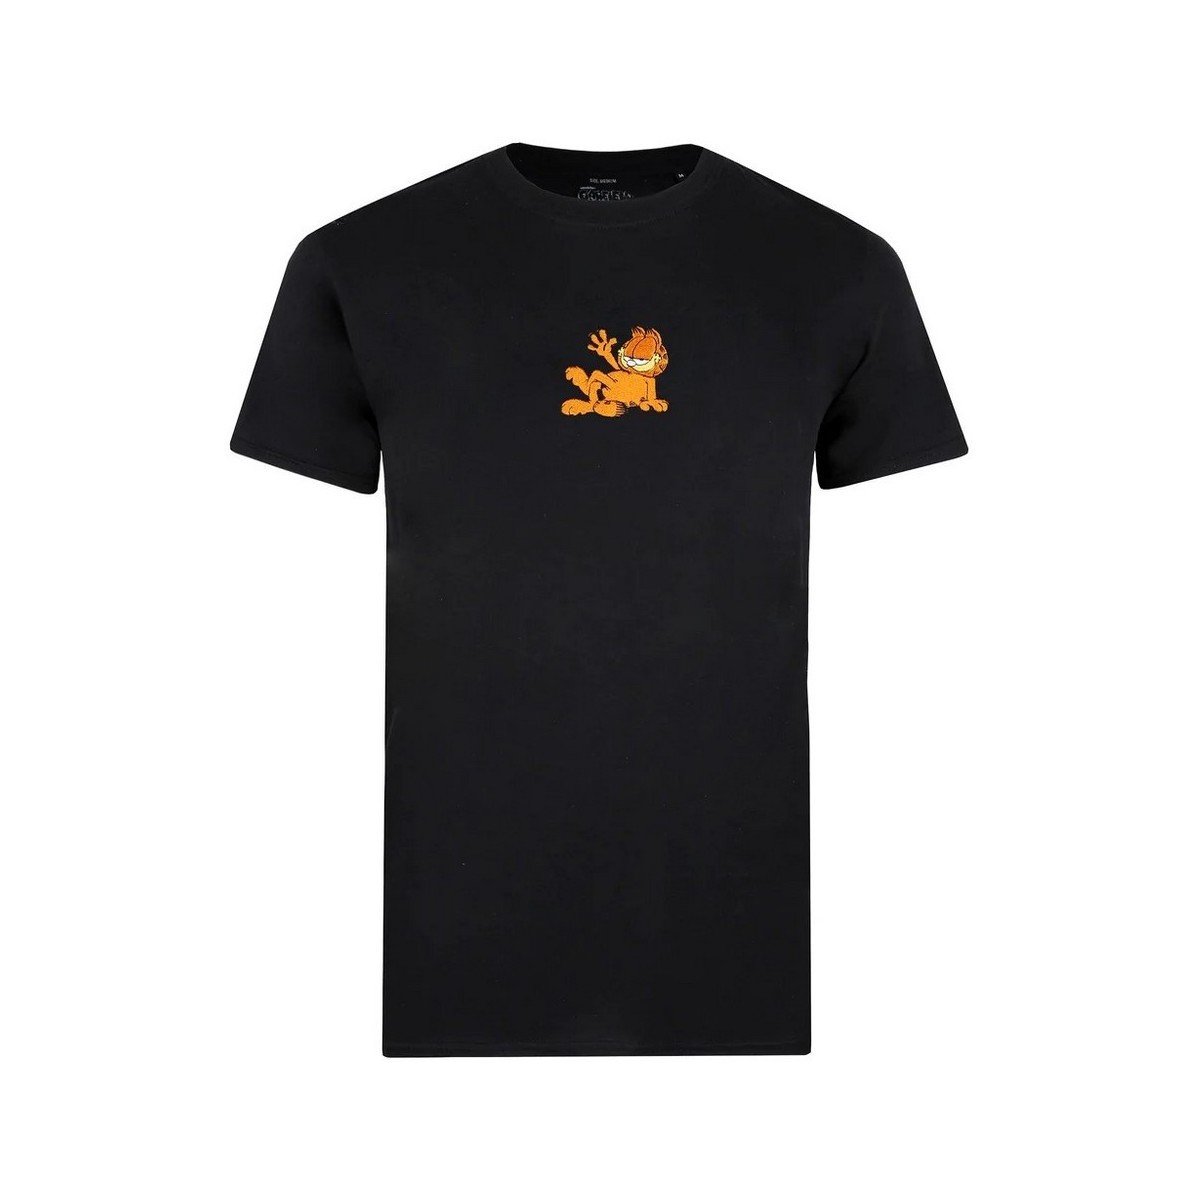 Vêtements Homme T-shirts manches longues Garfield TV1295 Noir